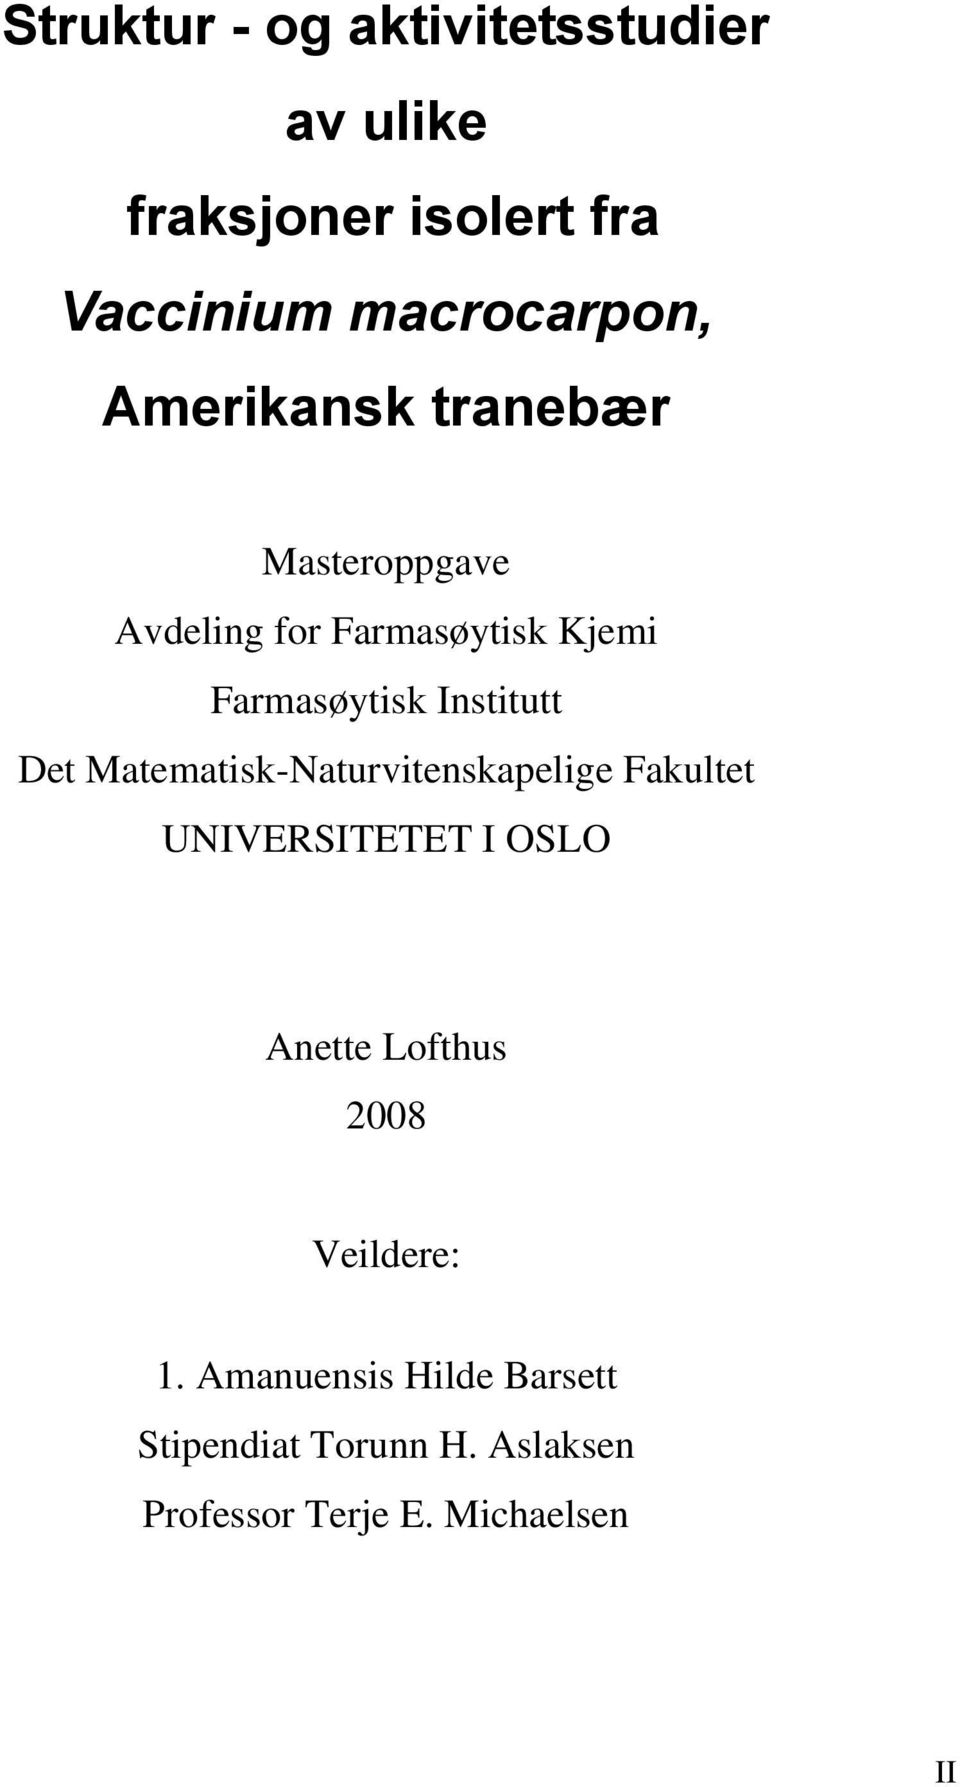 Det Matematisk-Naturvitenskapelige Fakultet UNIVERSITETET I OSLO Anette Lofthus 2008